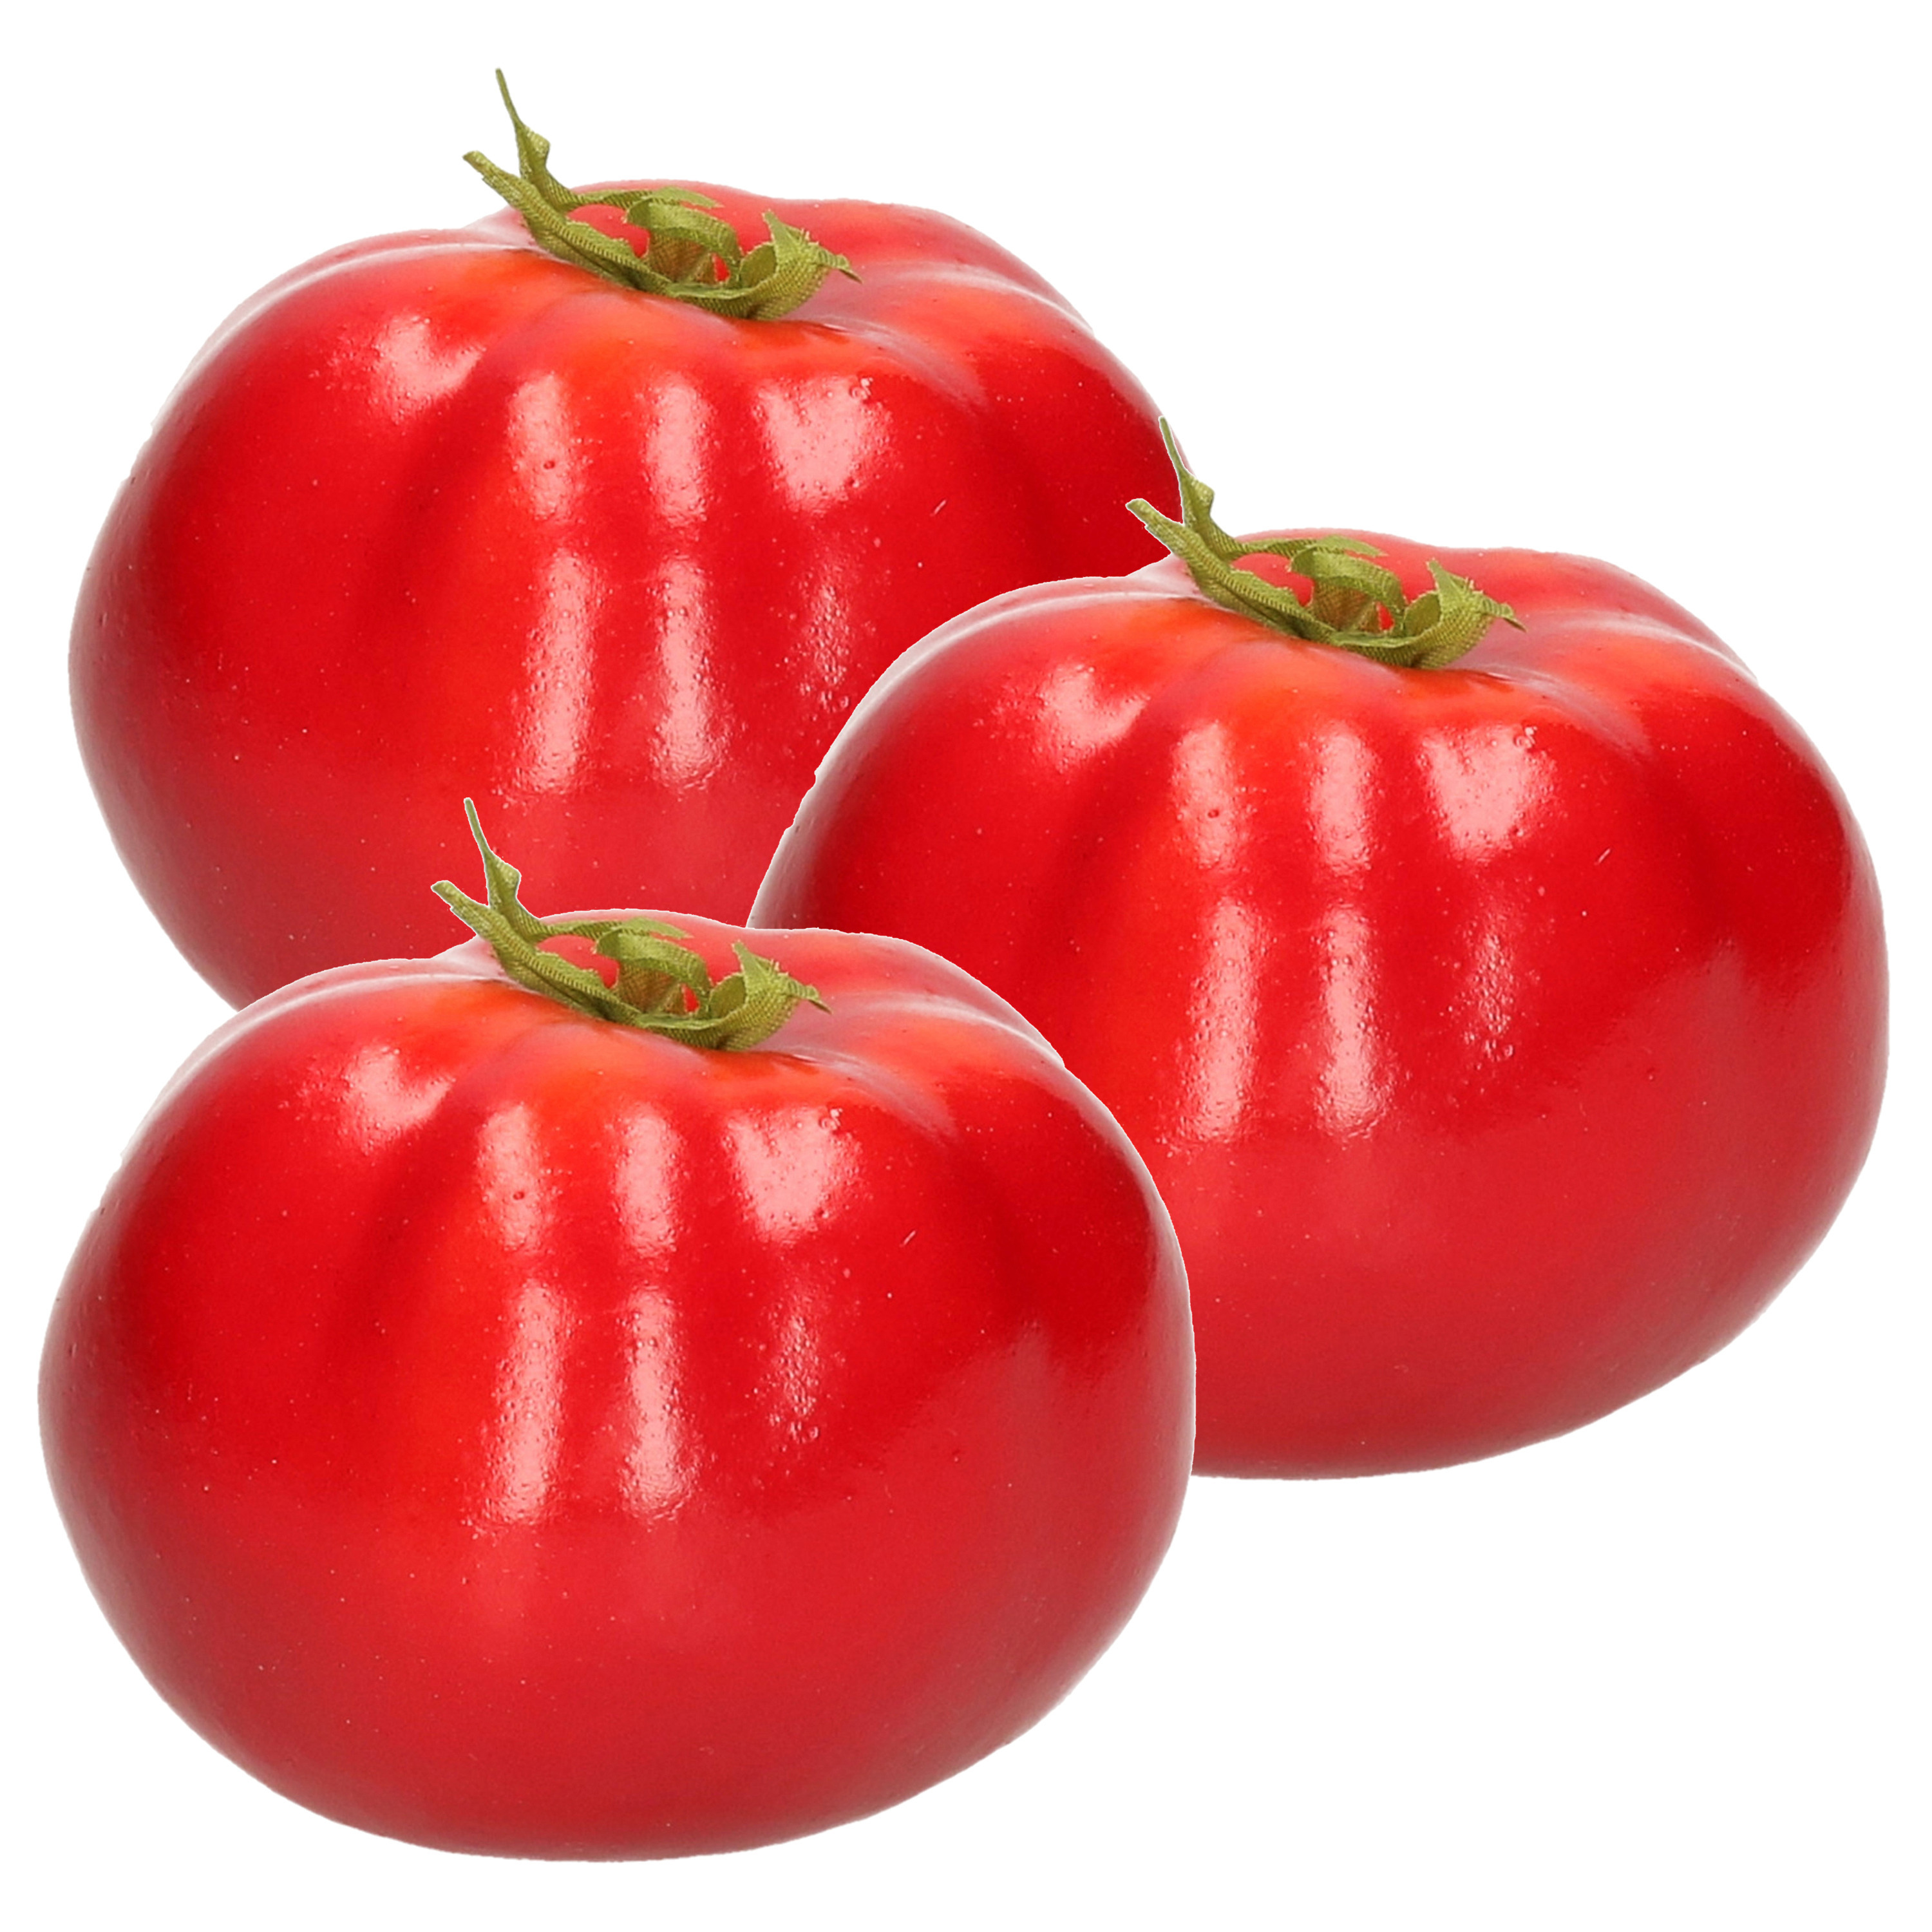 Esschert Design kunstfruit decofruit - 3x - tomaat/tomaten - ongeveer 6 cm - rood -